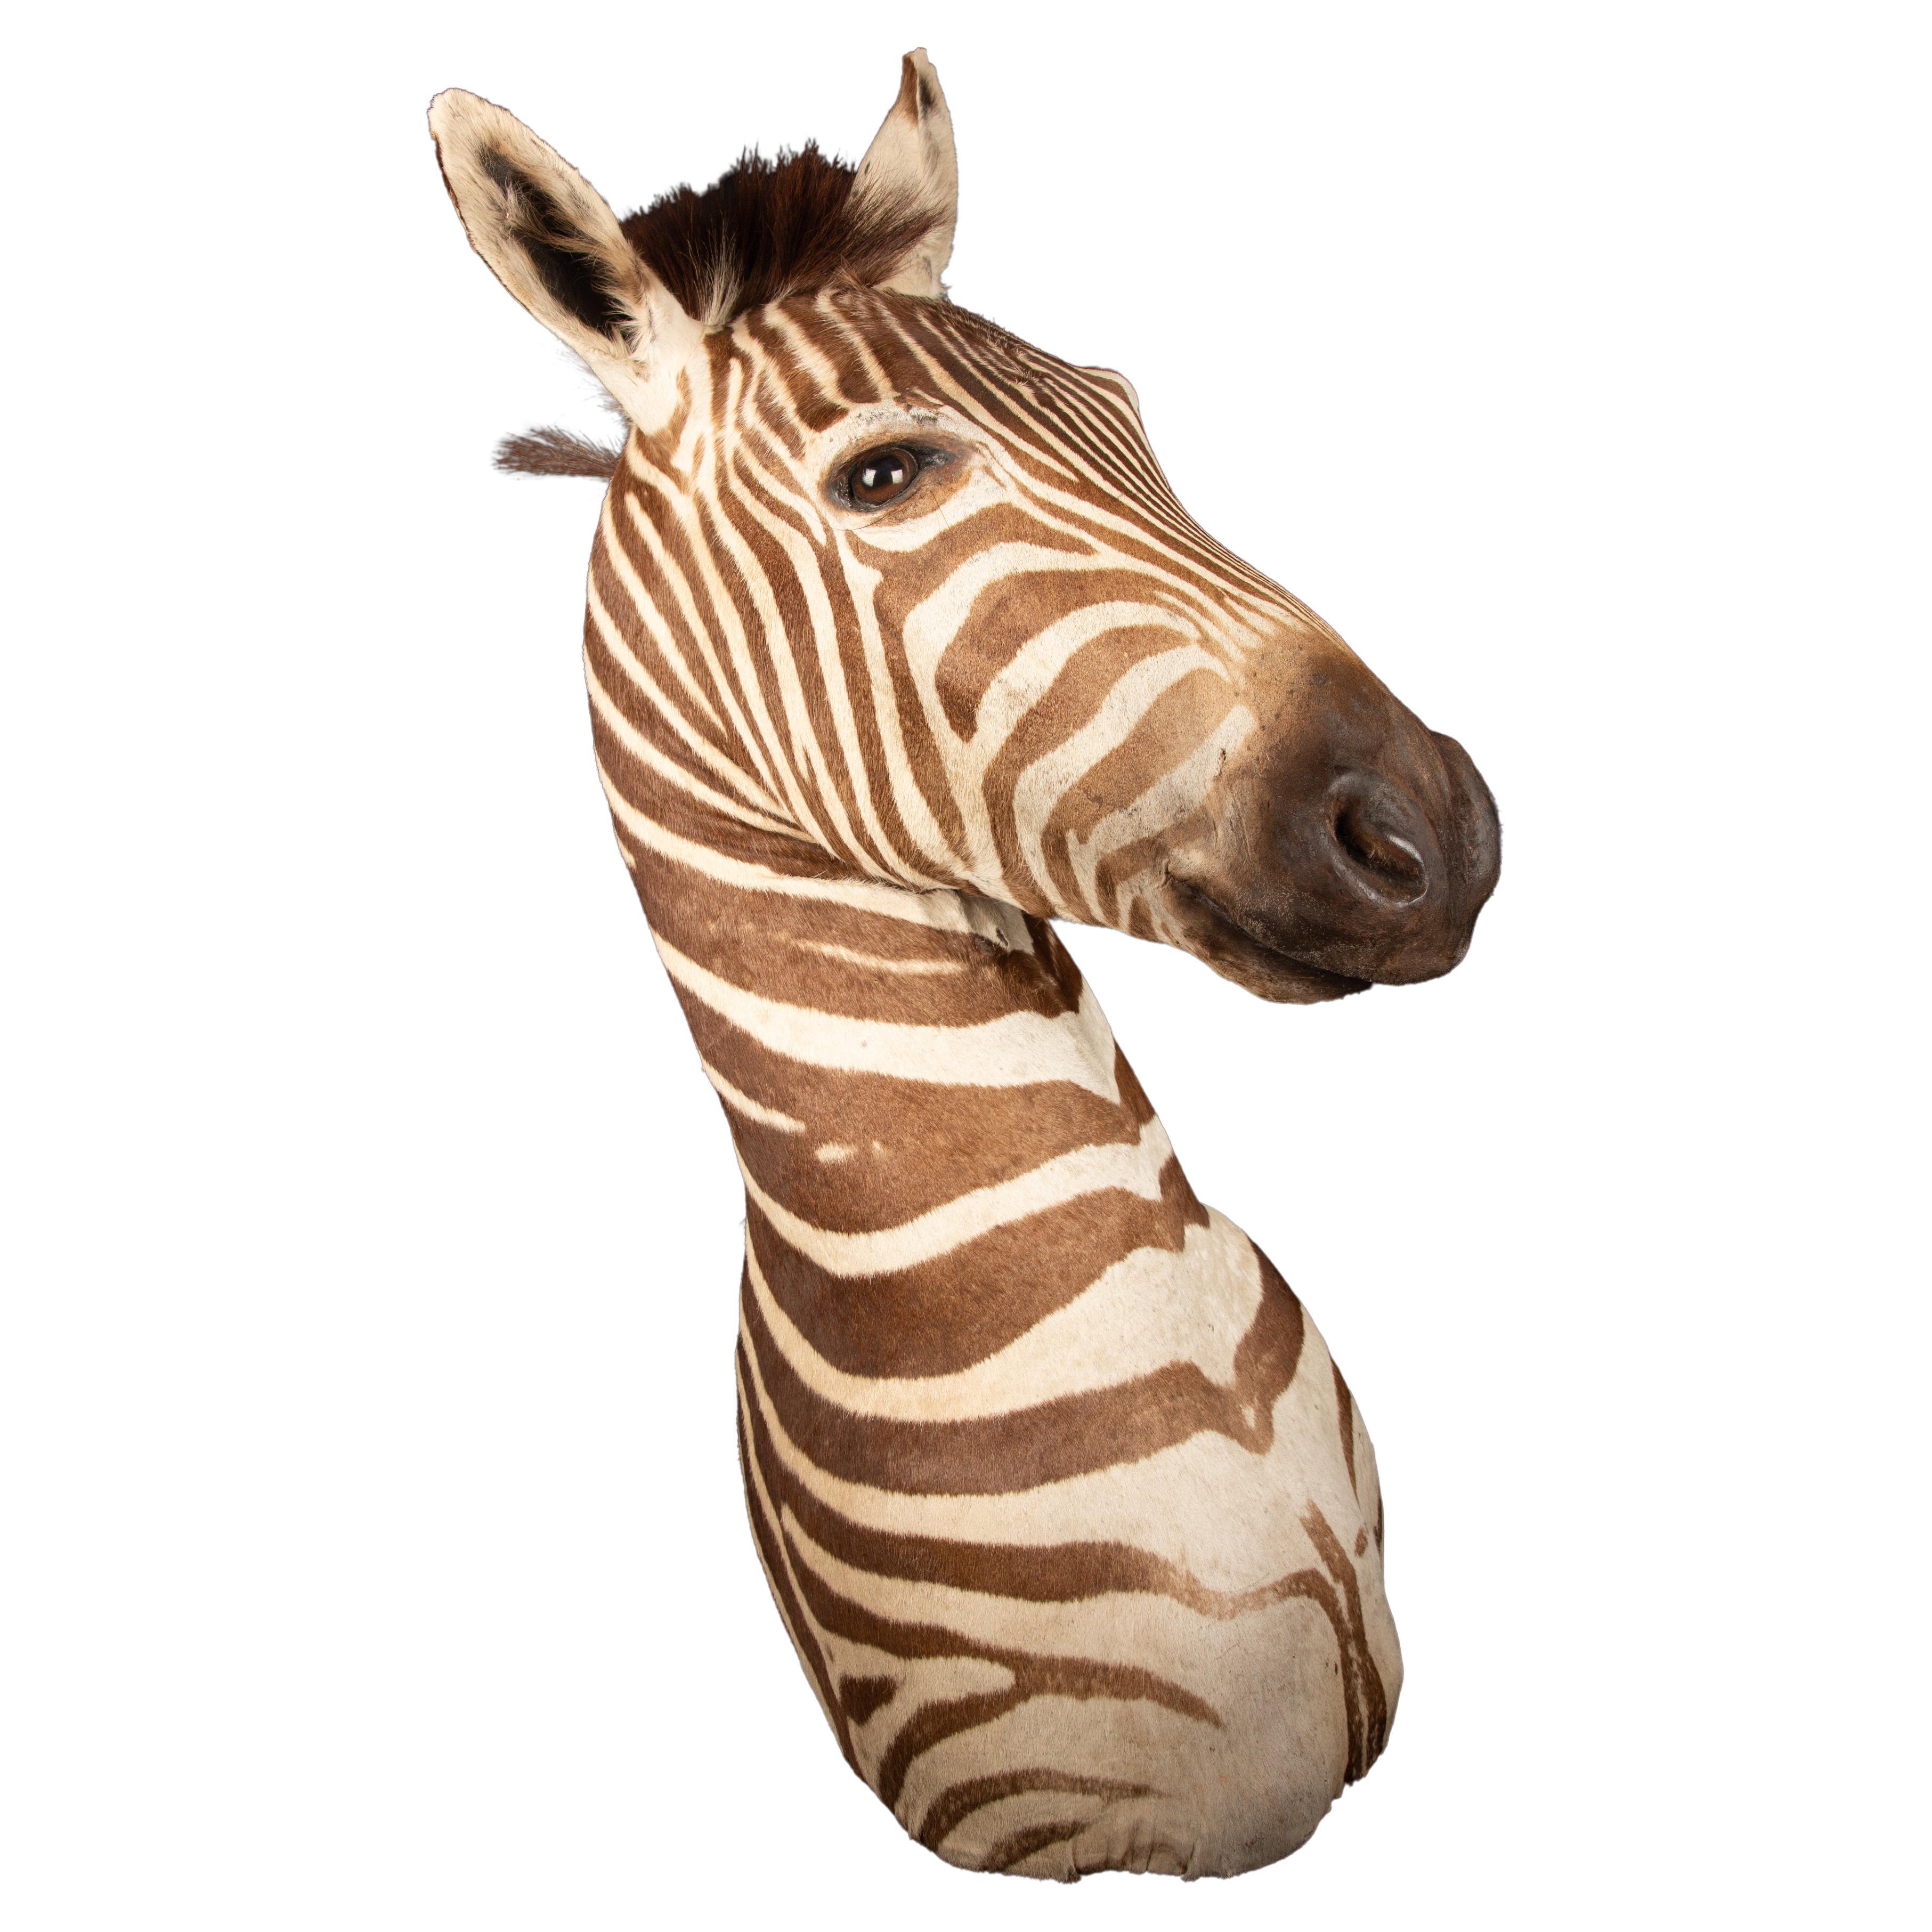 Erstklassige Schulterpräparate des Burchell-Zebra, einer südlichen Unterart des Steppenzebras, aus Südafrika. Dieses exquisite Kunstwerk misst 37